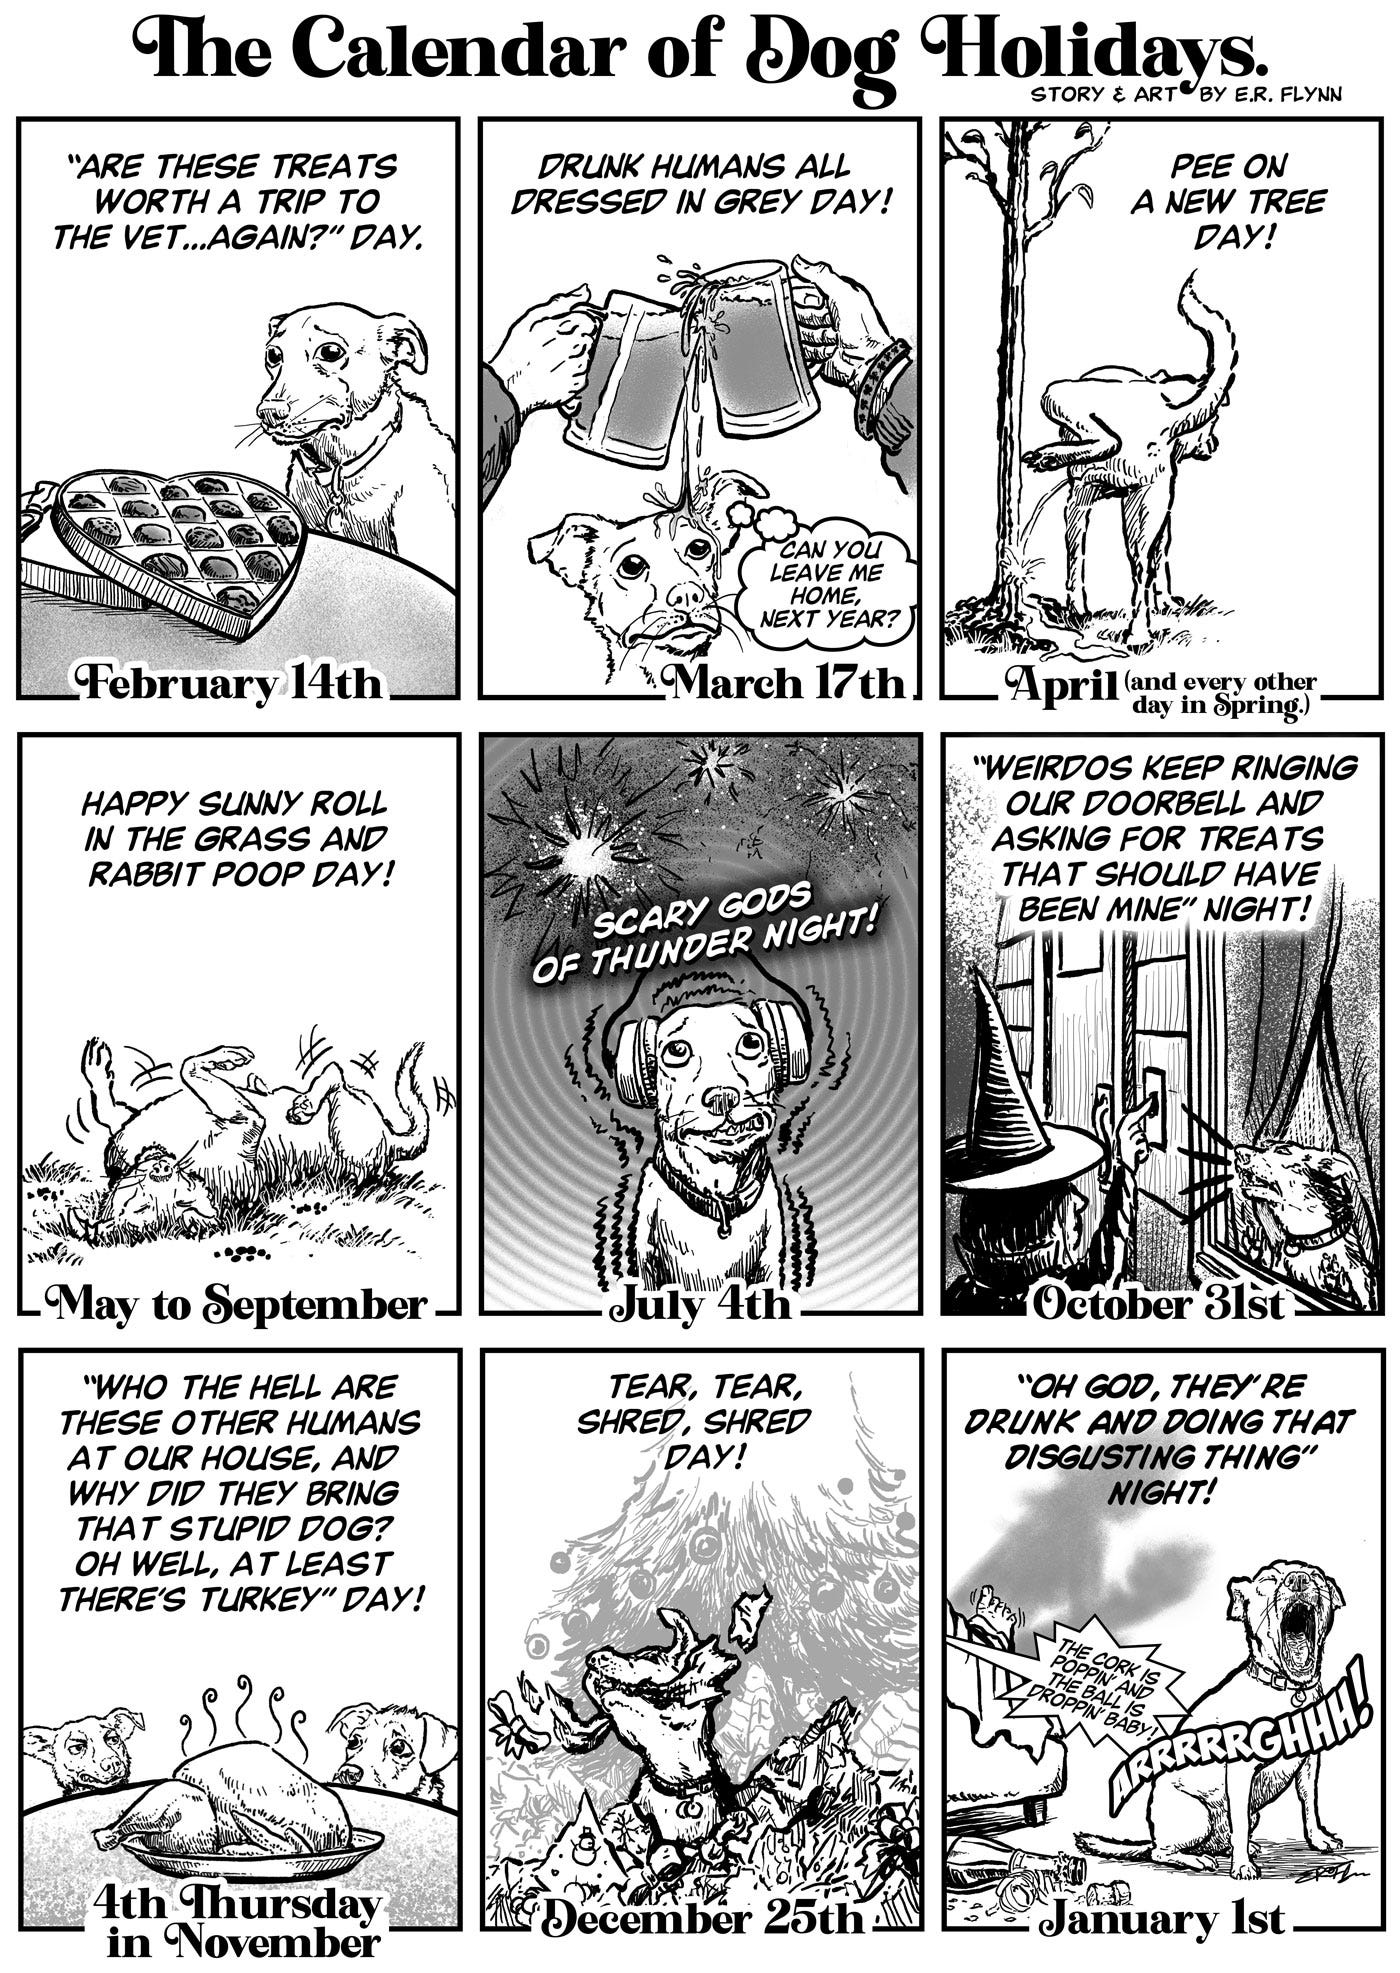 The Calendar of Dog Holidays Comic by E.R. Flynn